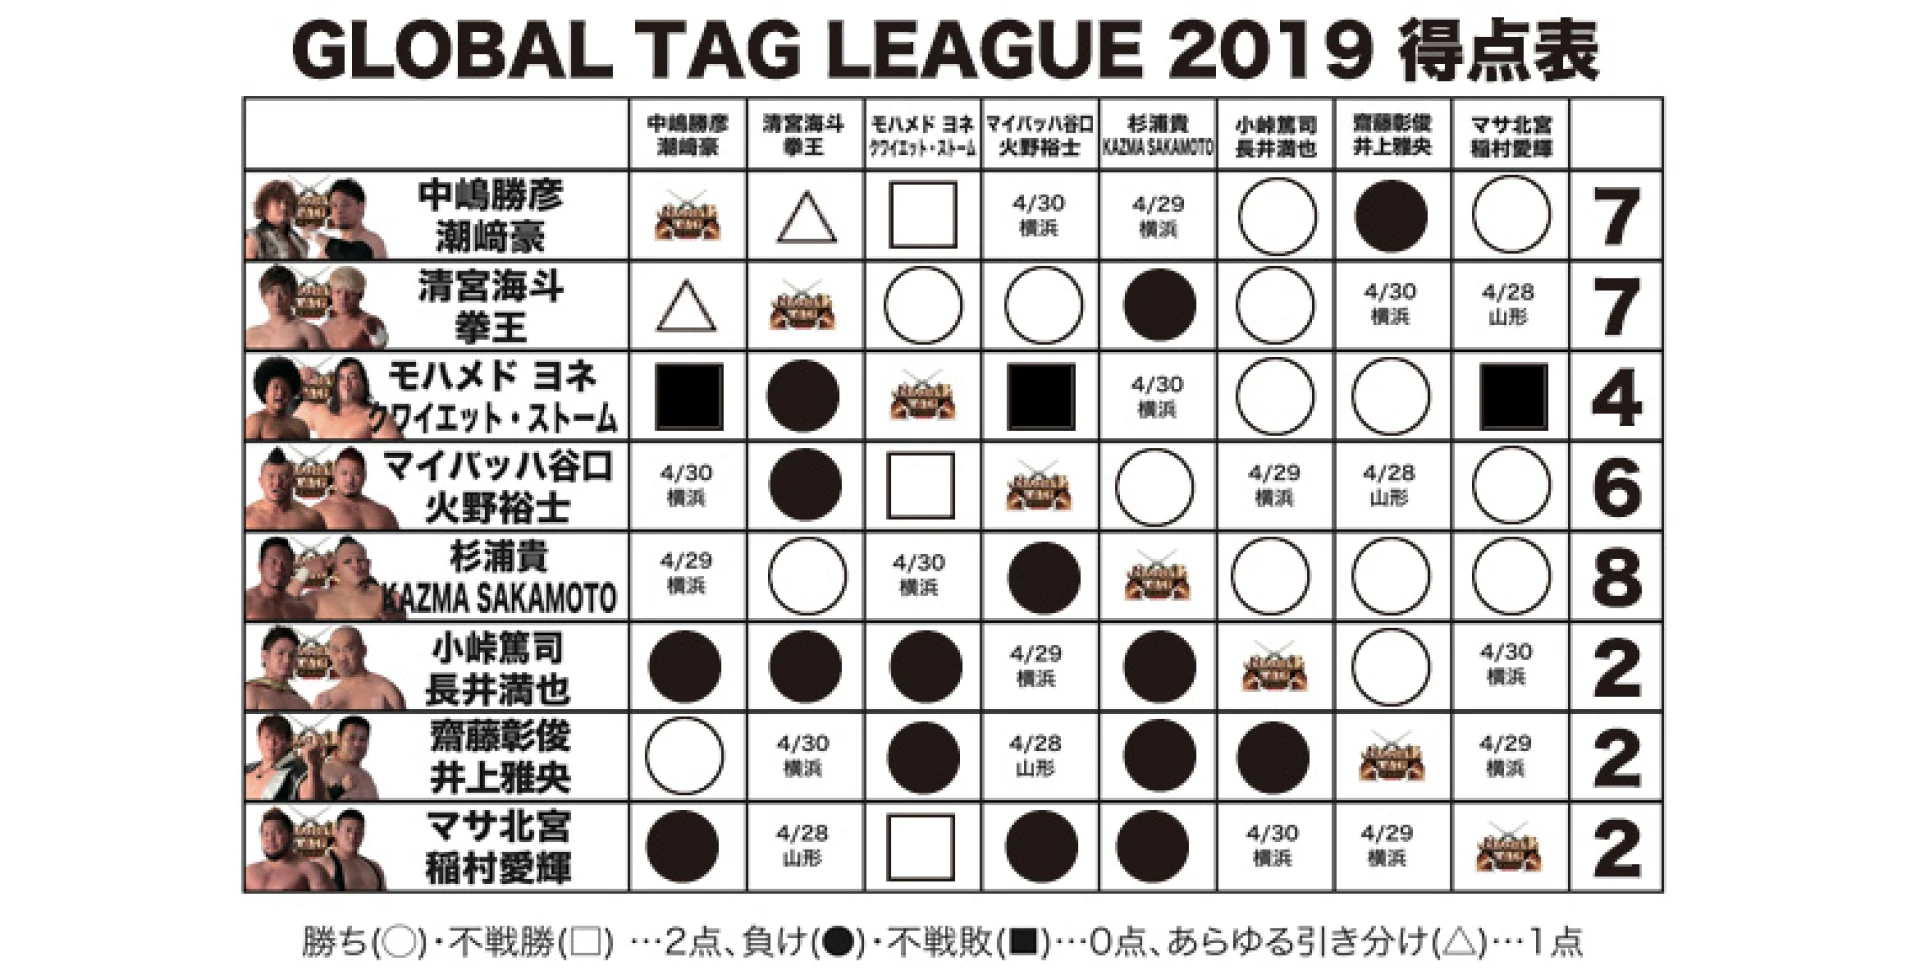 【4.27仙台大会終了時の得点状況】『GLOBAL TAG LEAGUE 2019』得点表